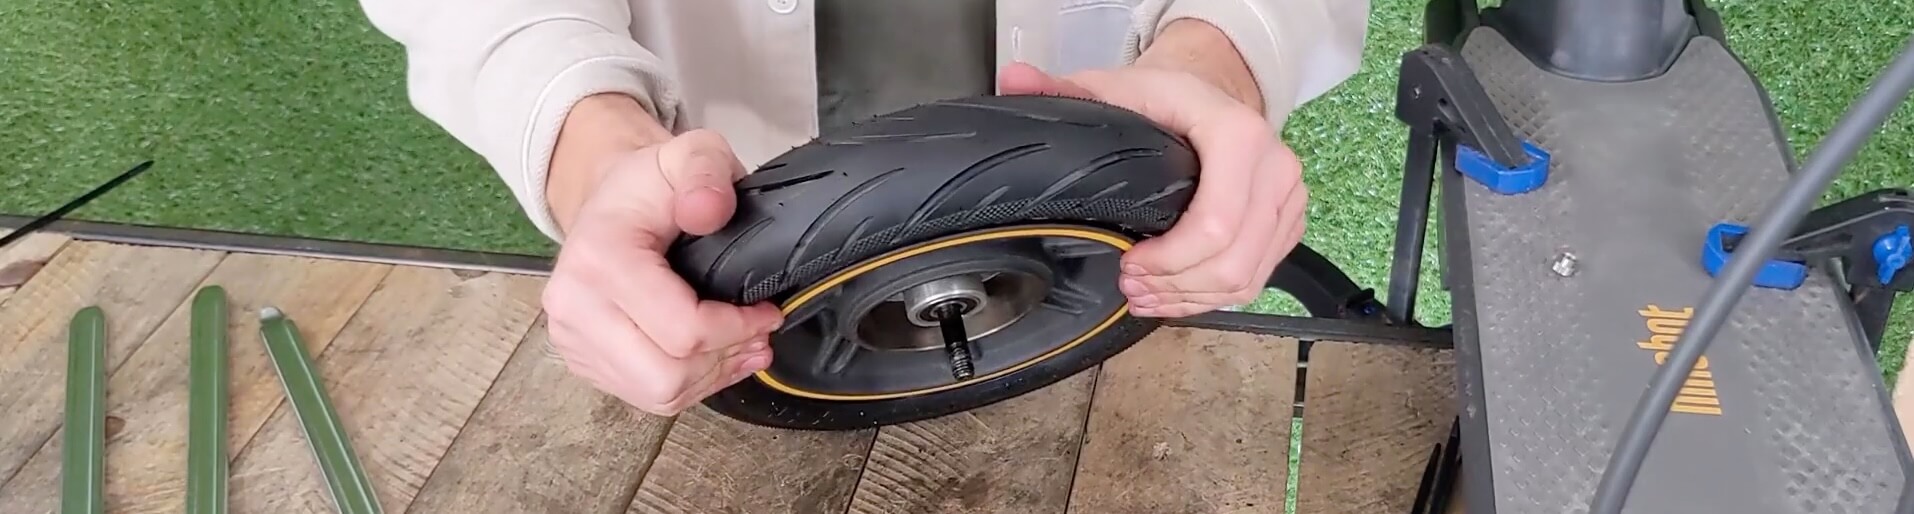 Montage du nouveau pneu